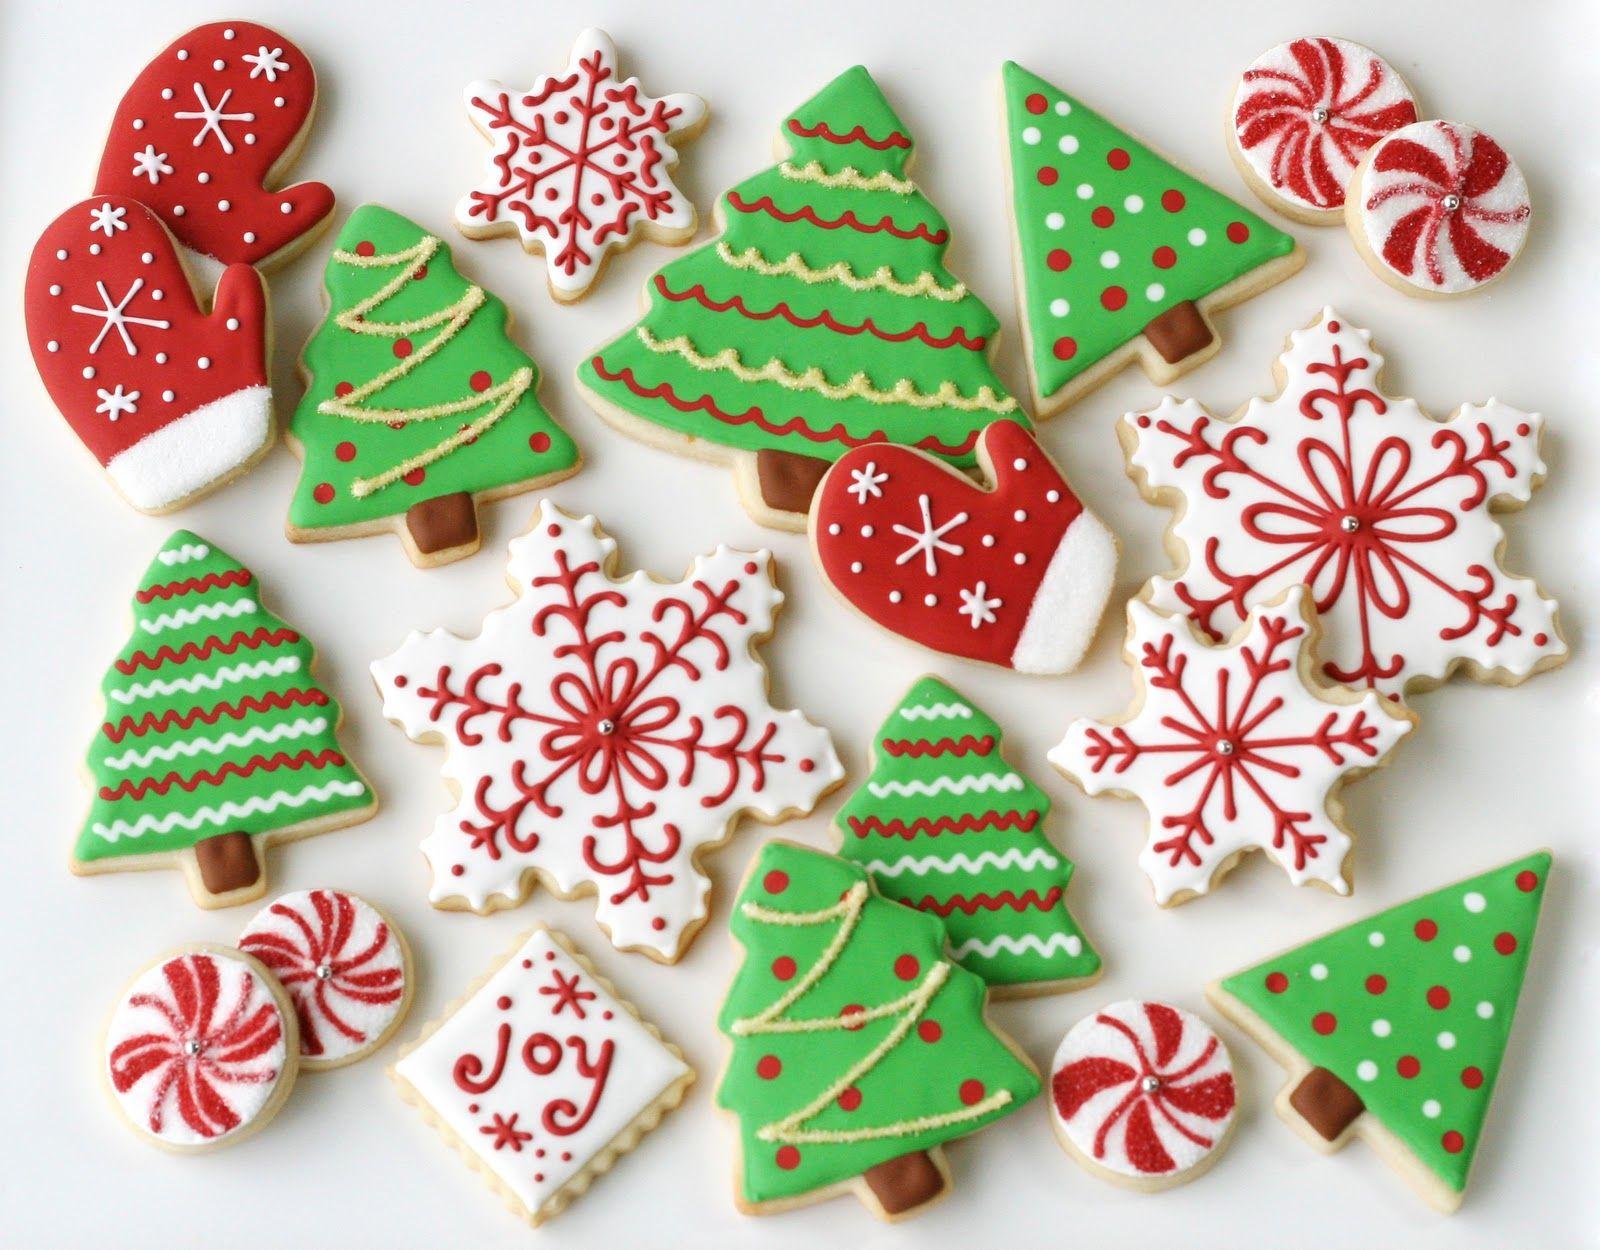 Christmas Sugar Cookies Wallpapers